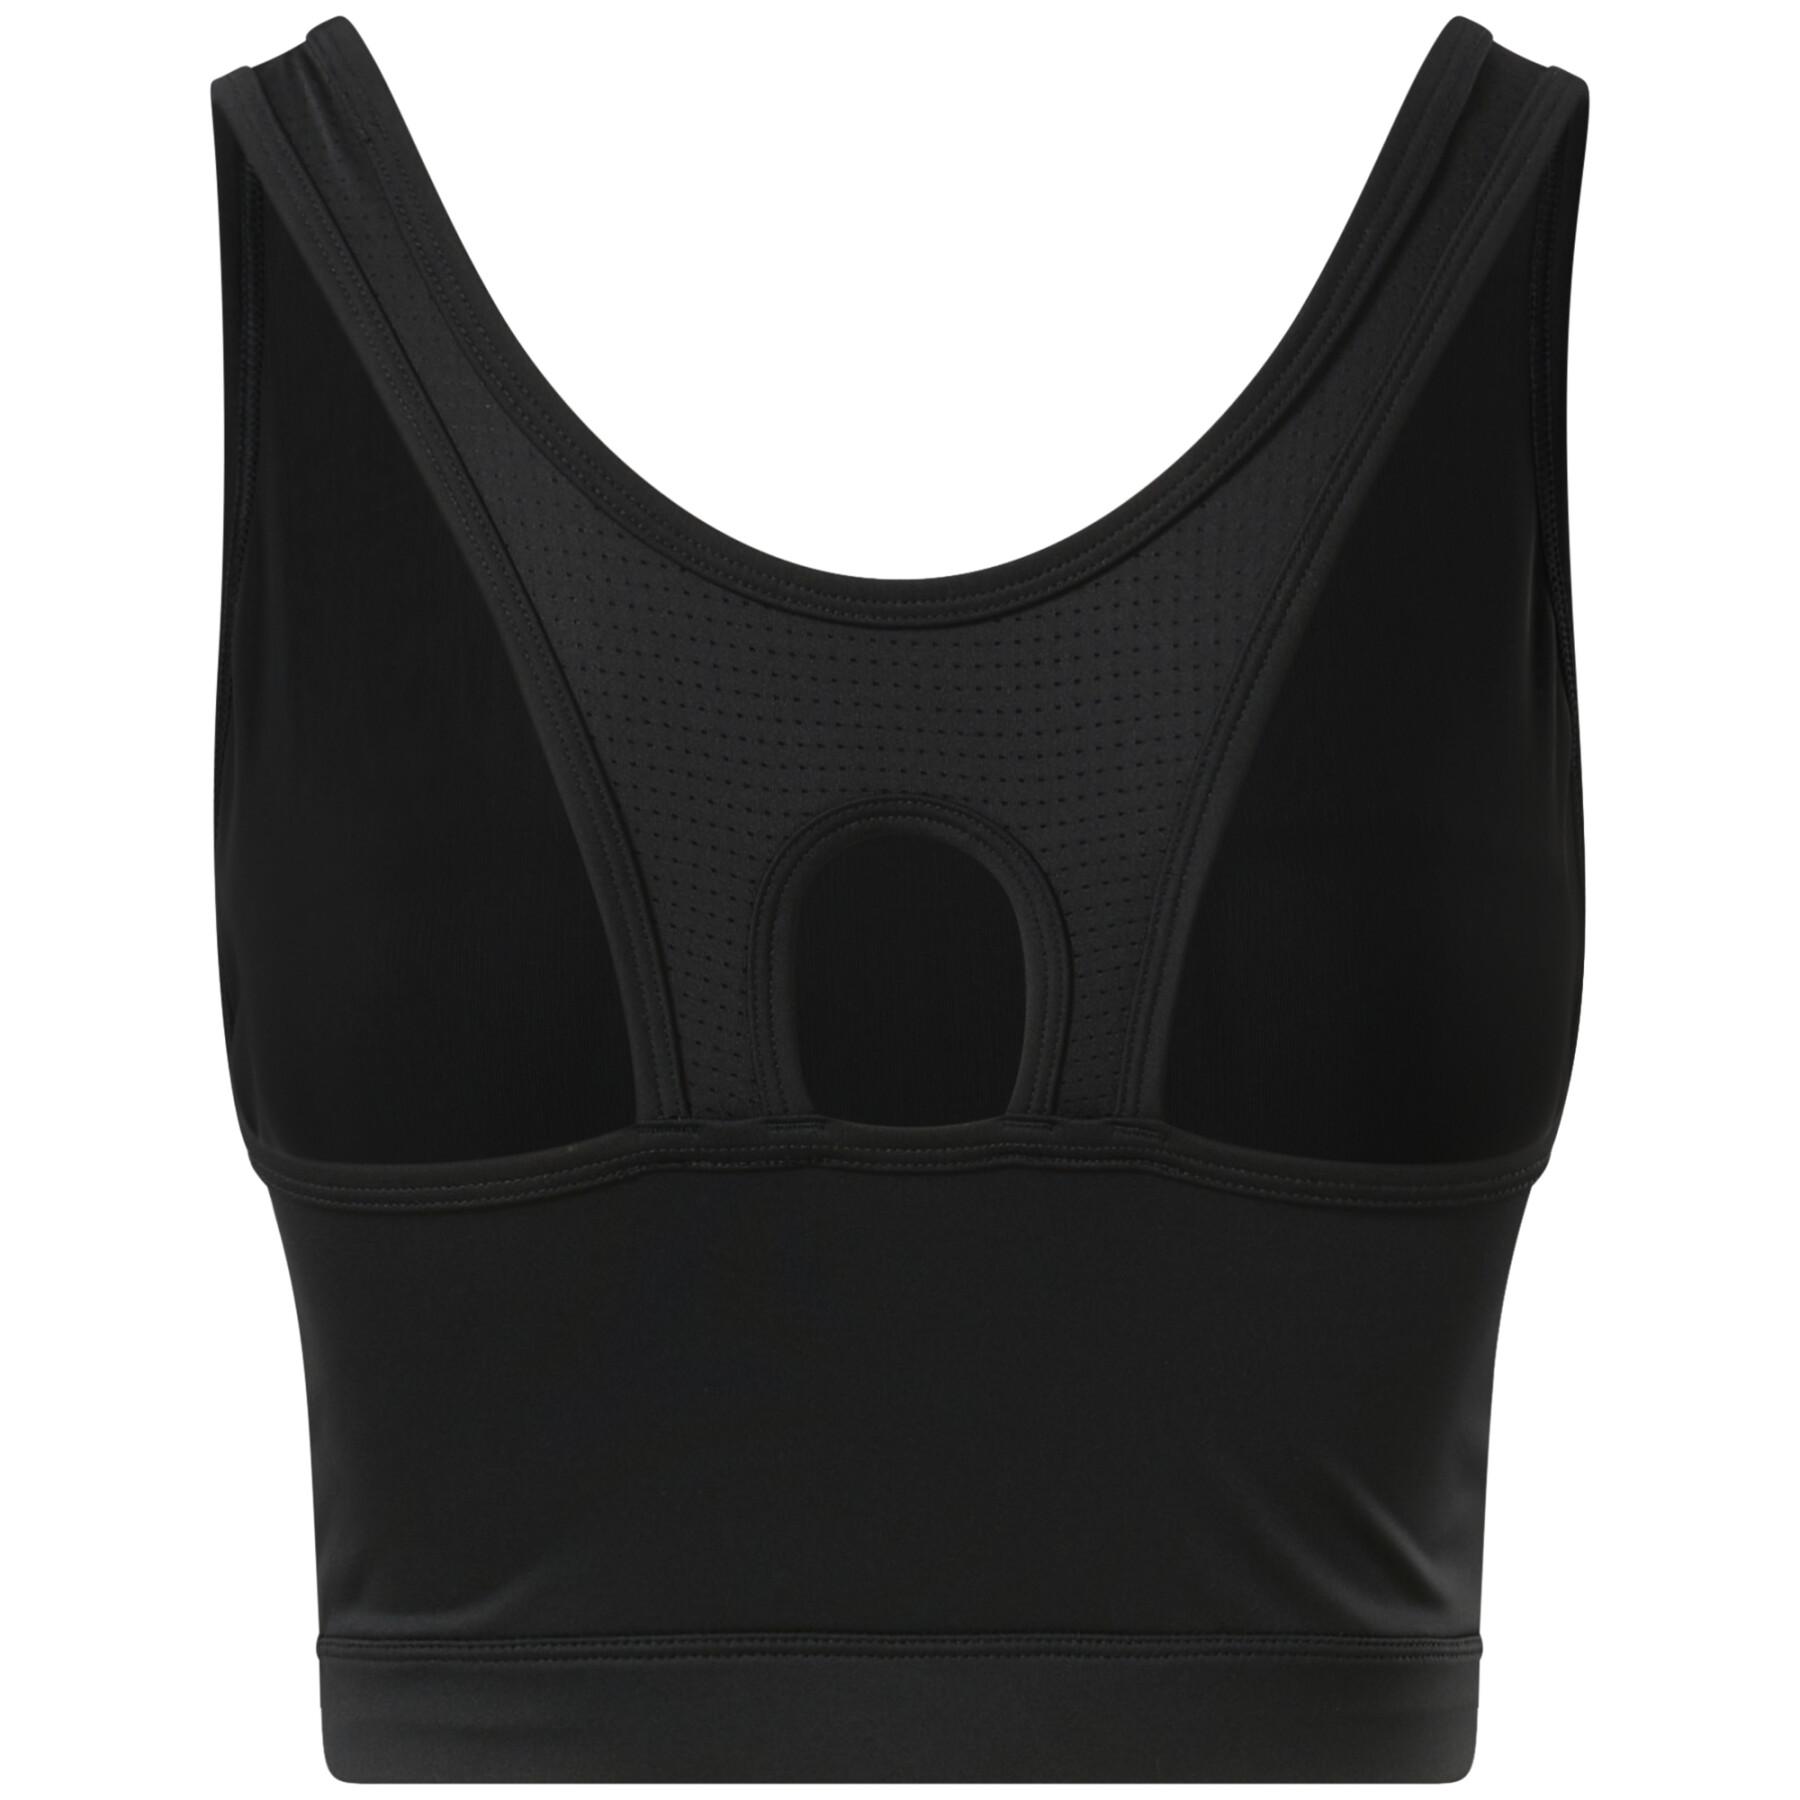 Women's bra Reebok Sans Armatures Workout Ready